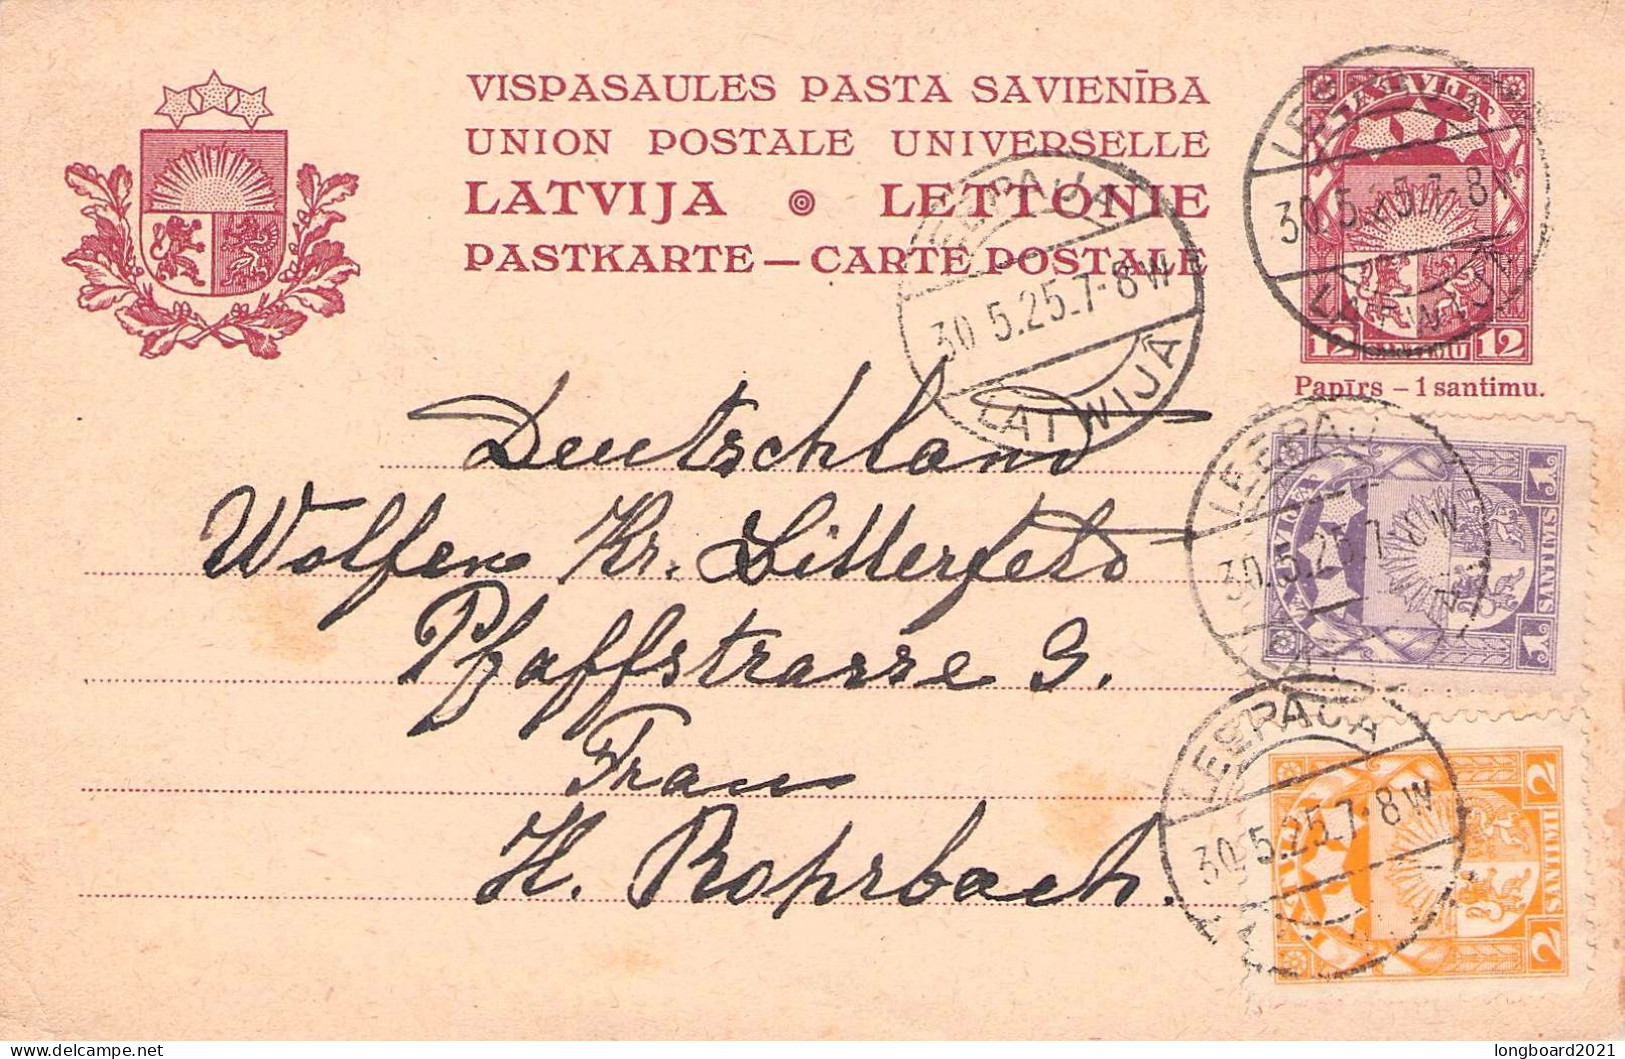 LATVIA - CARTE POSTALE Uprated 1925 LIEPAJA - Krs BITTERFELD Mi P2 / 1298 - Lettland